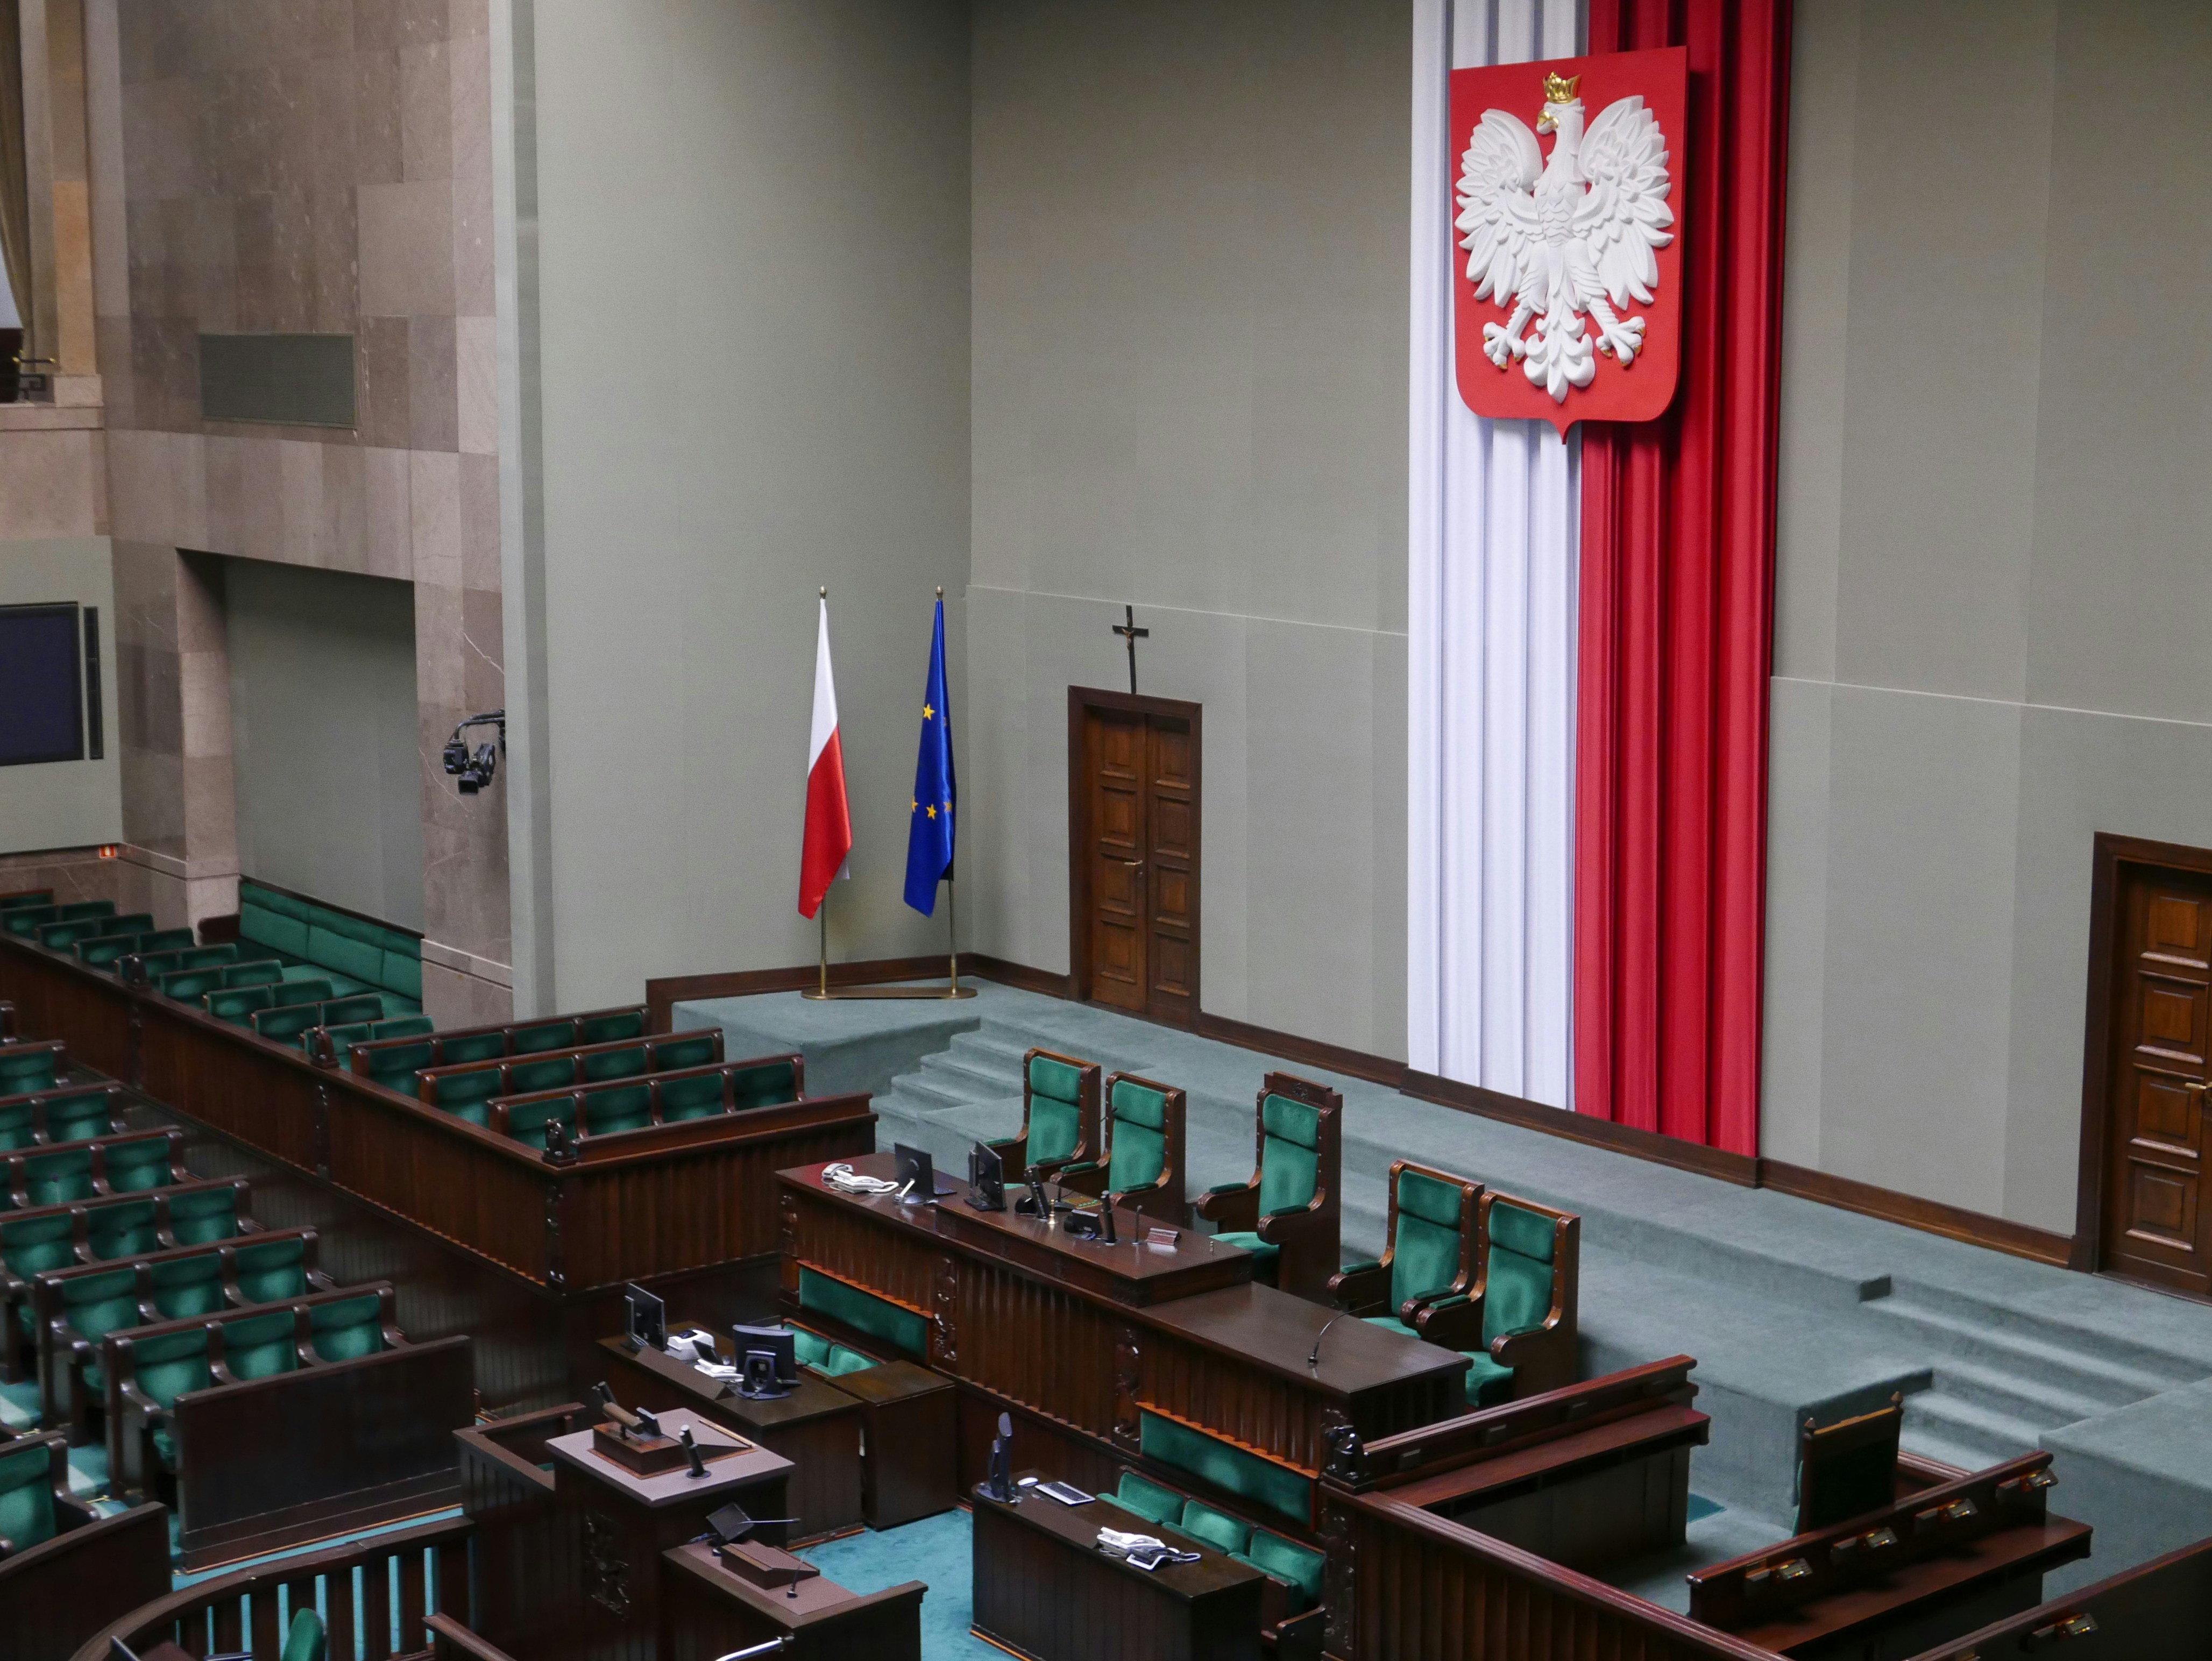 Konstytucja Rzeczypospolitej Polskiej a BHP: podstawowe prawa i obowiązki pracowników